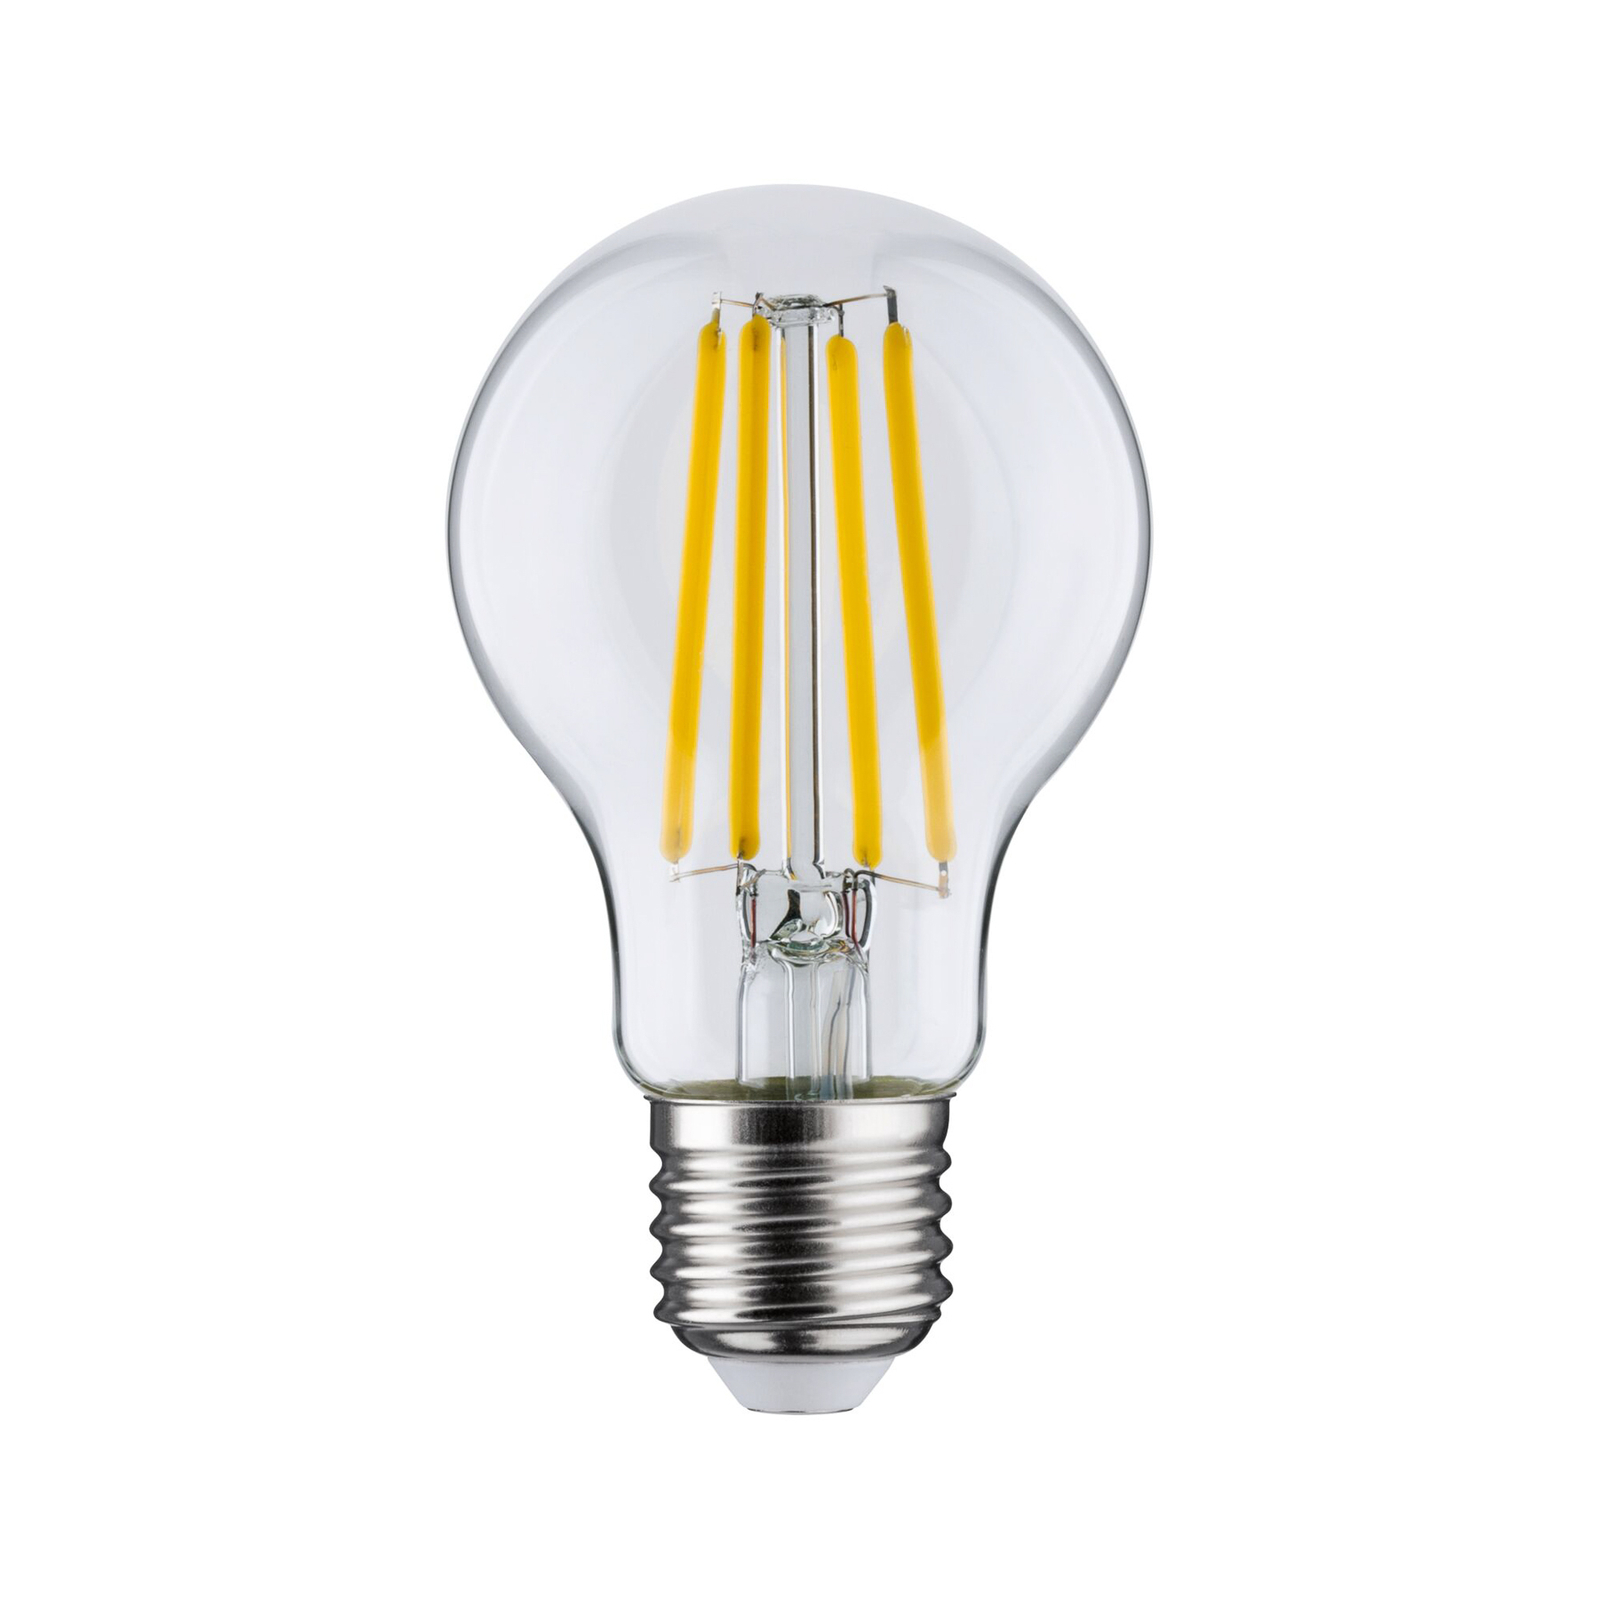 Paulmann Eco-Line ampoule LED E27 2,5W 525lm 3000K